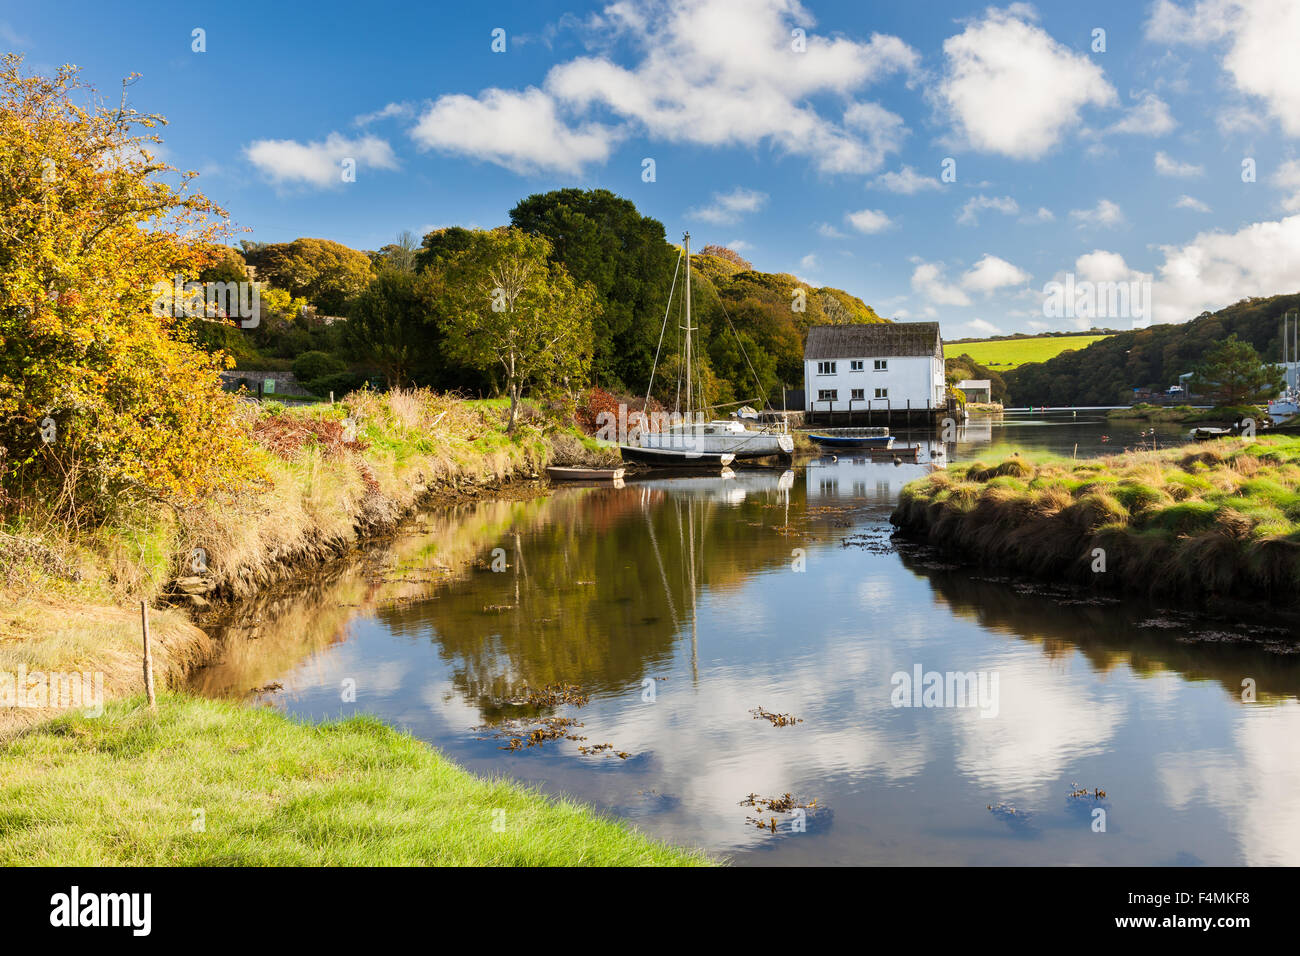 Le village pittoresque de Gweek situé à la tête de la rivière Helford Cornwall England UK Europe Banque D'Images